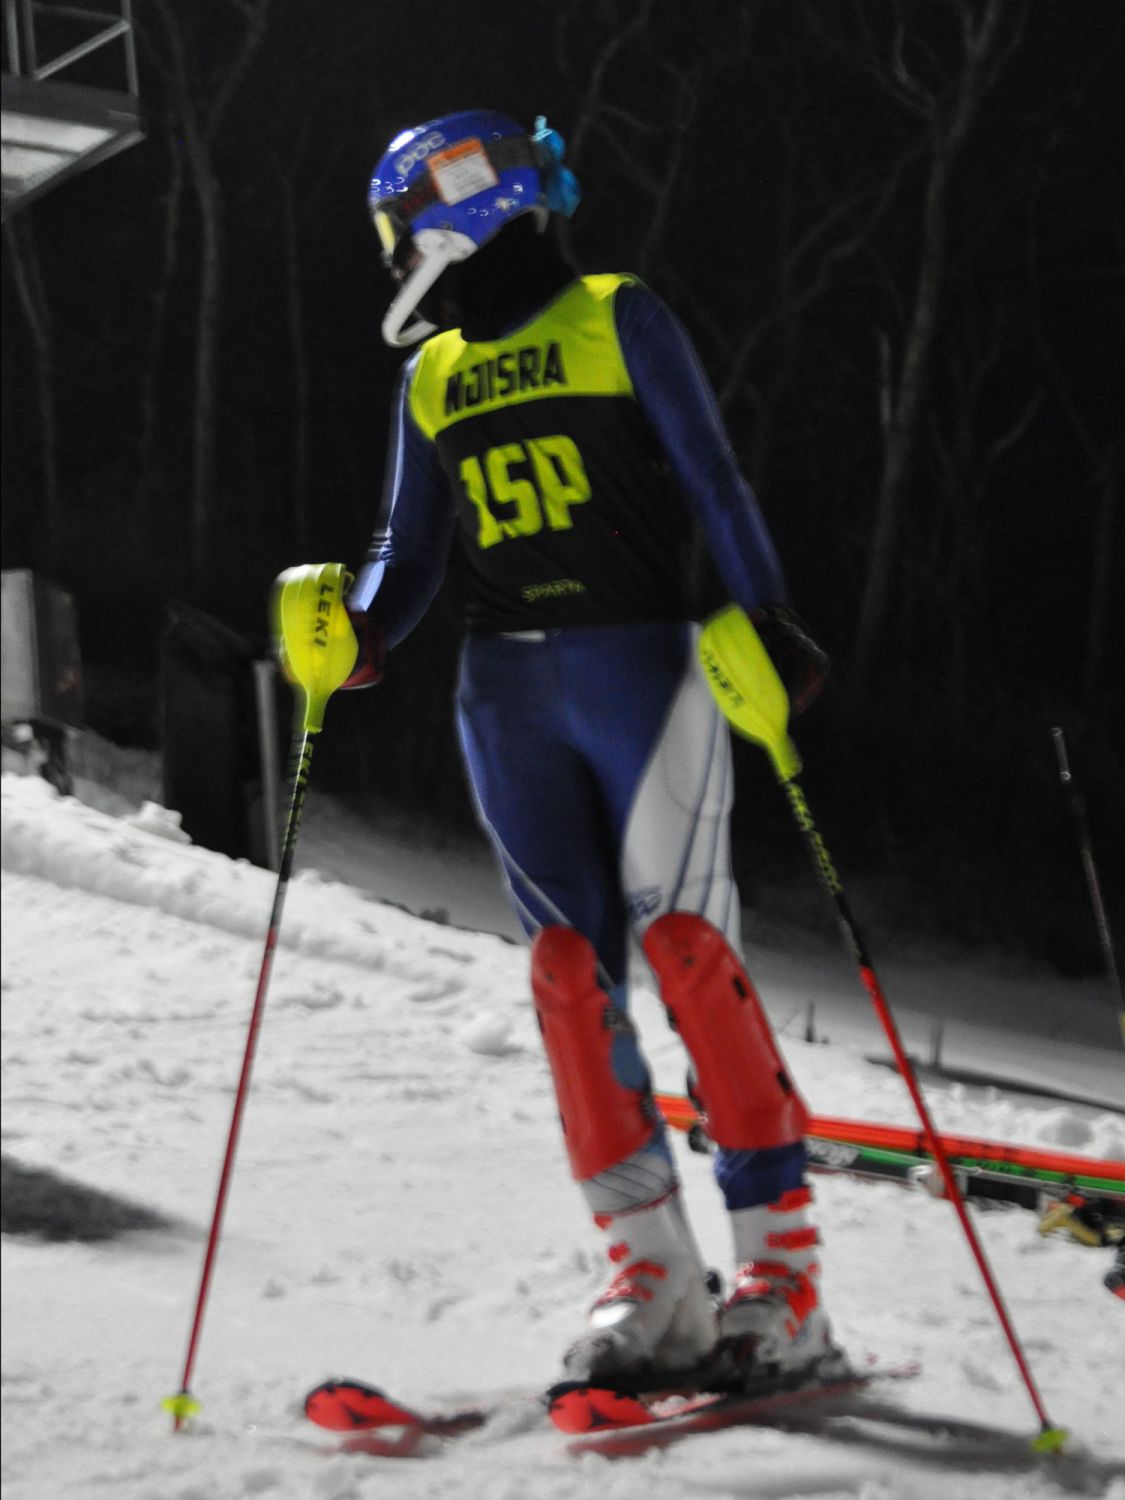 Kanna at Slalom #2